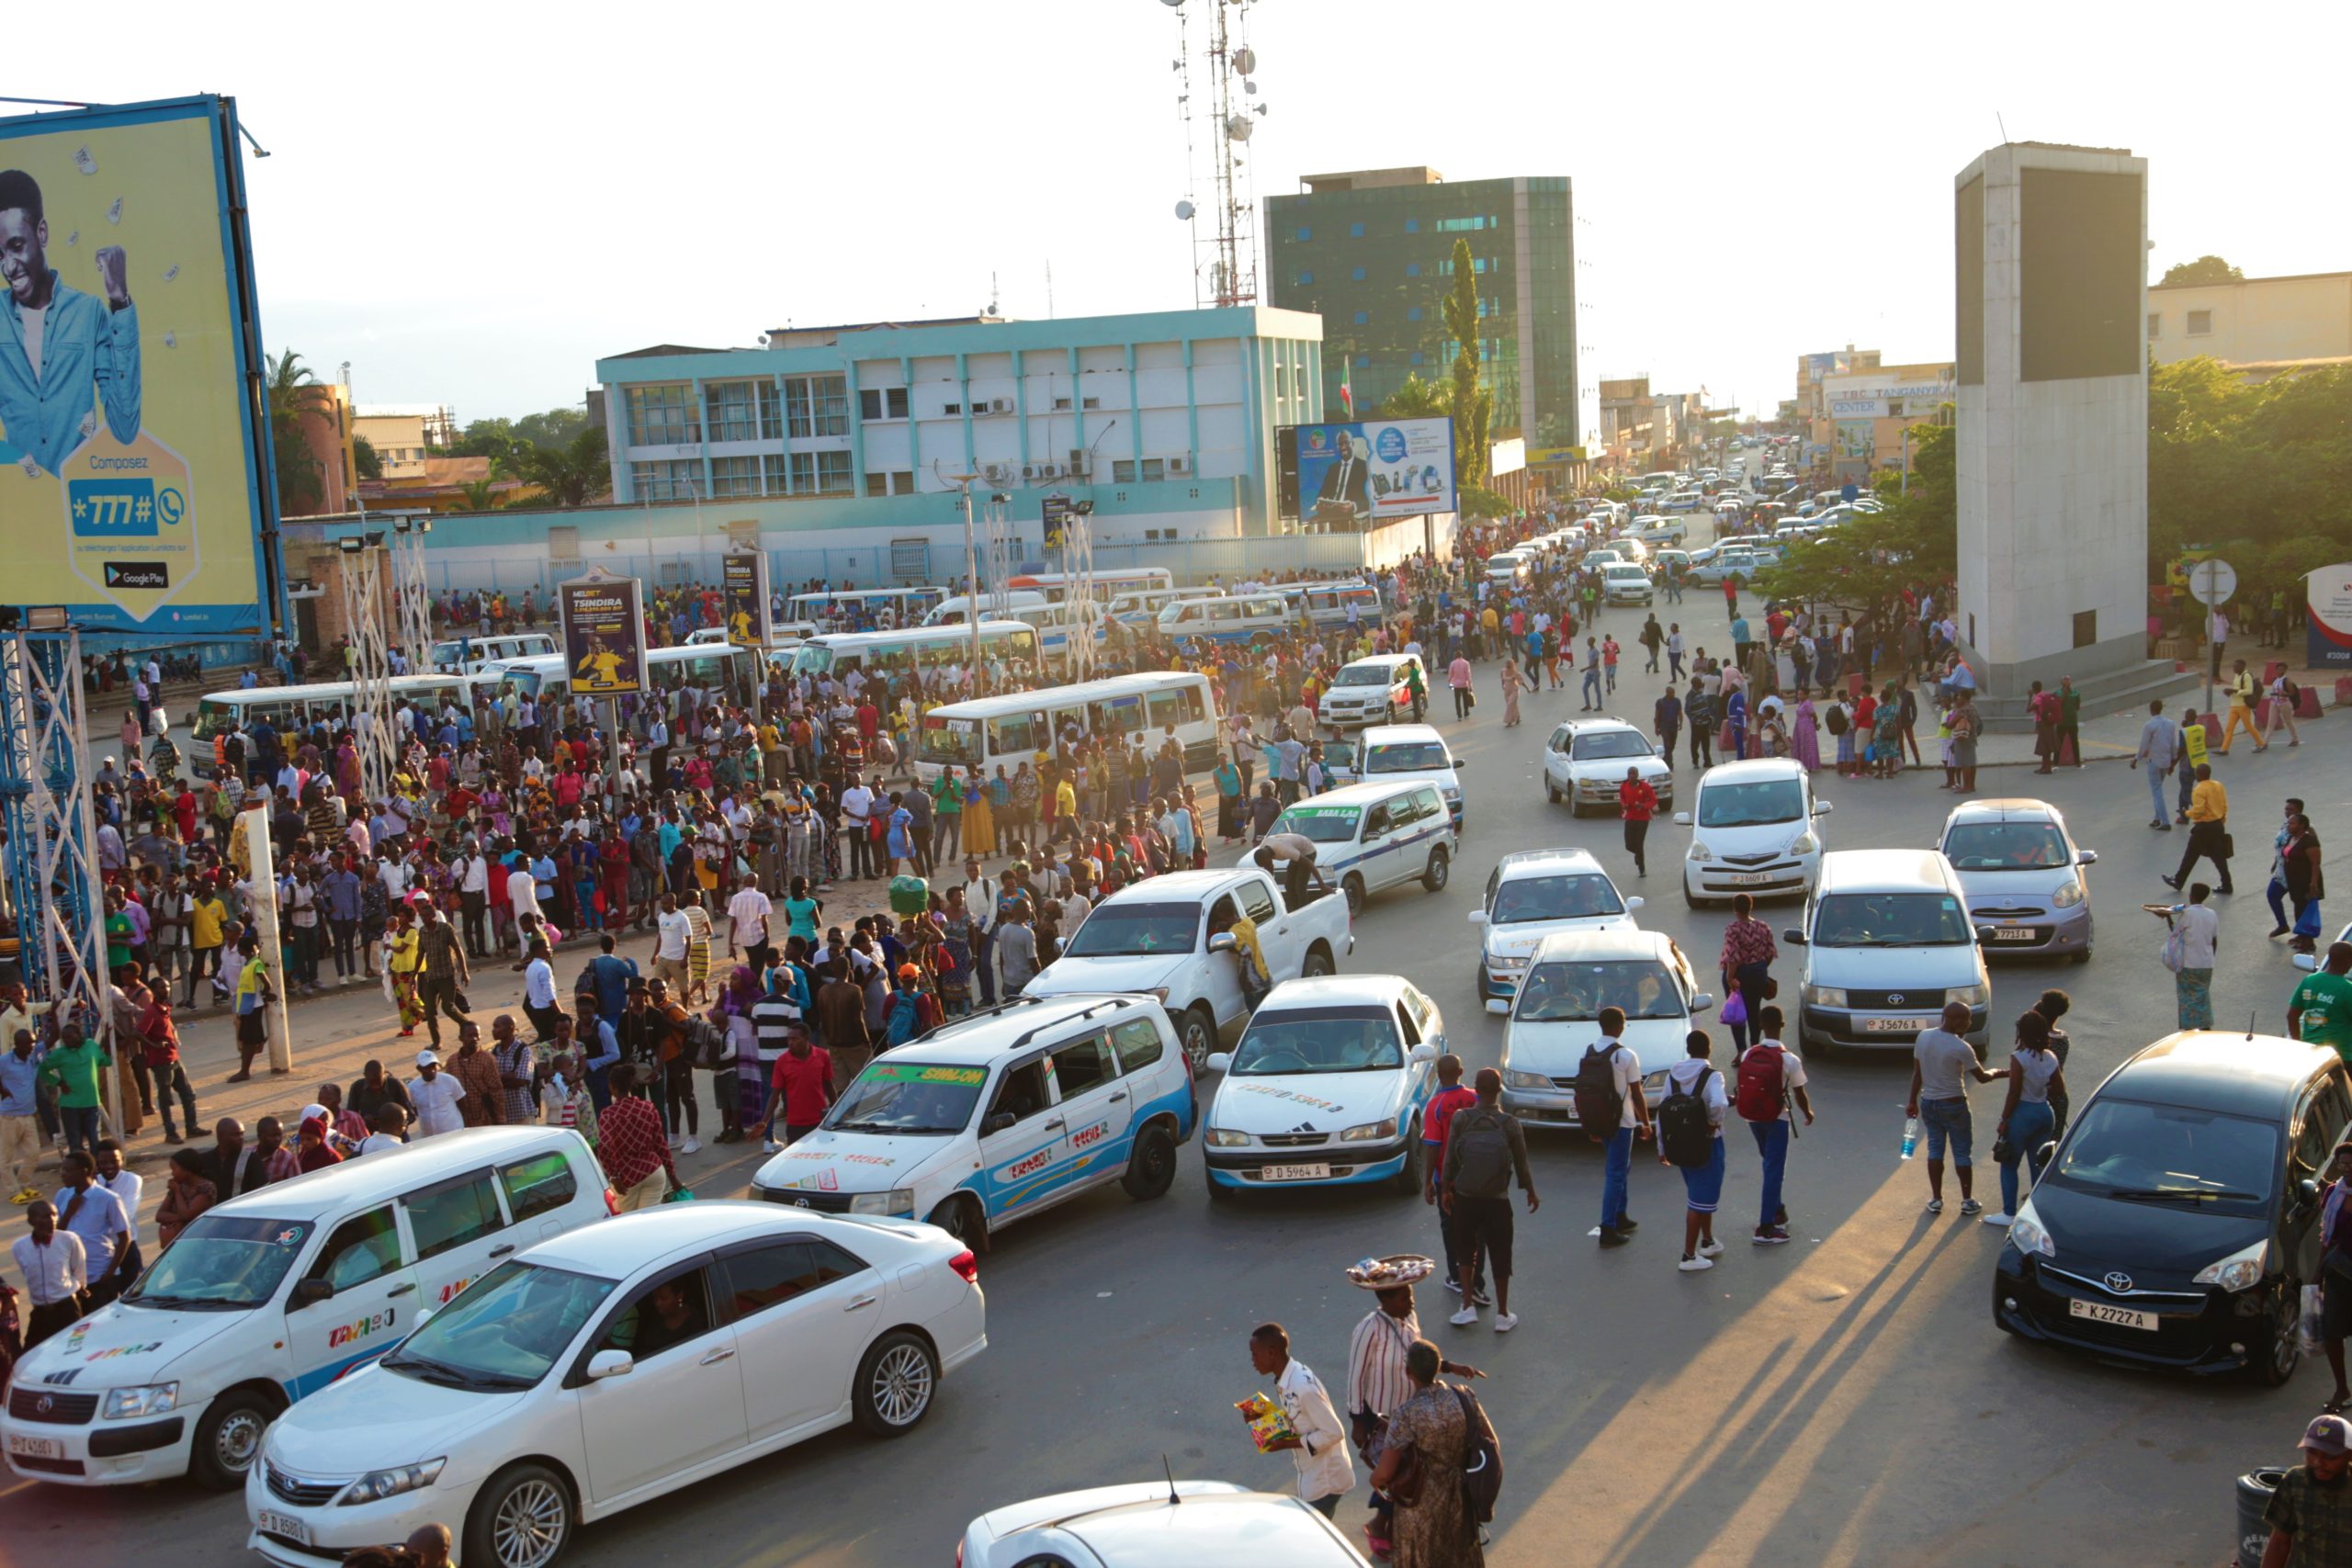 Lire la suite à propos de l’article La pénurie de carburant au Burundi et ses lourdes conséquences